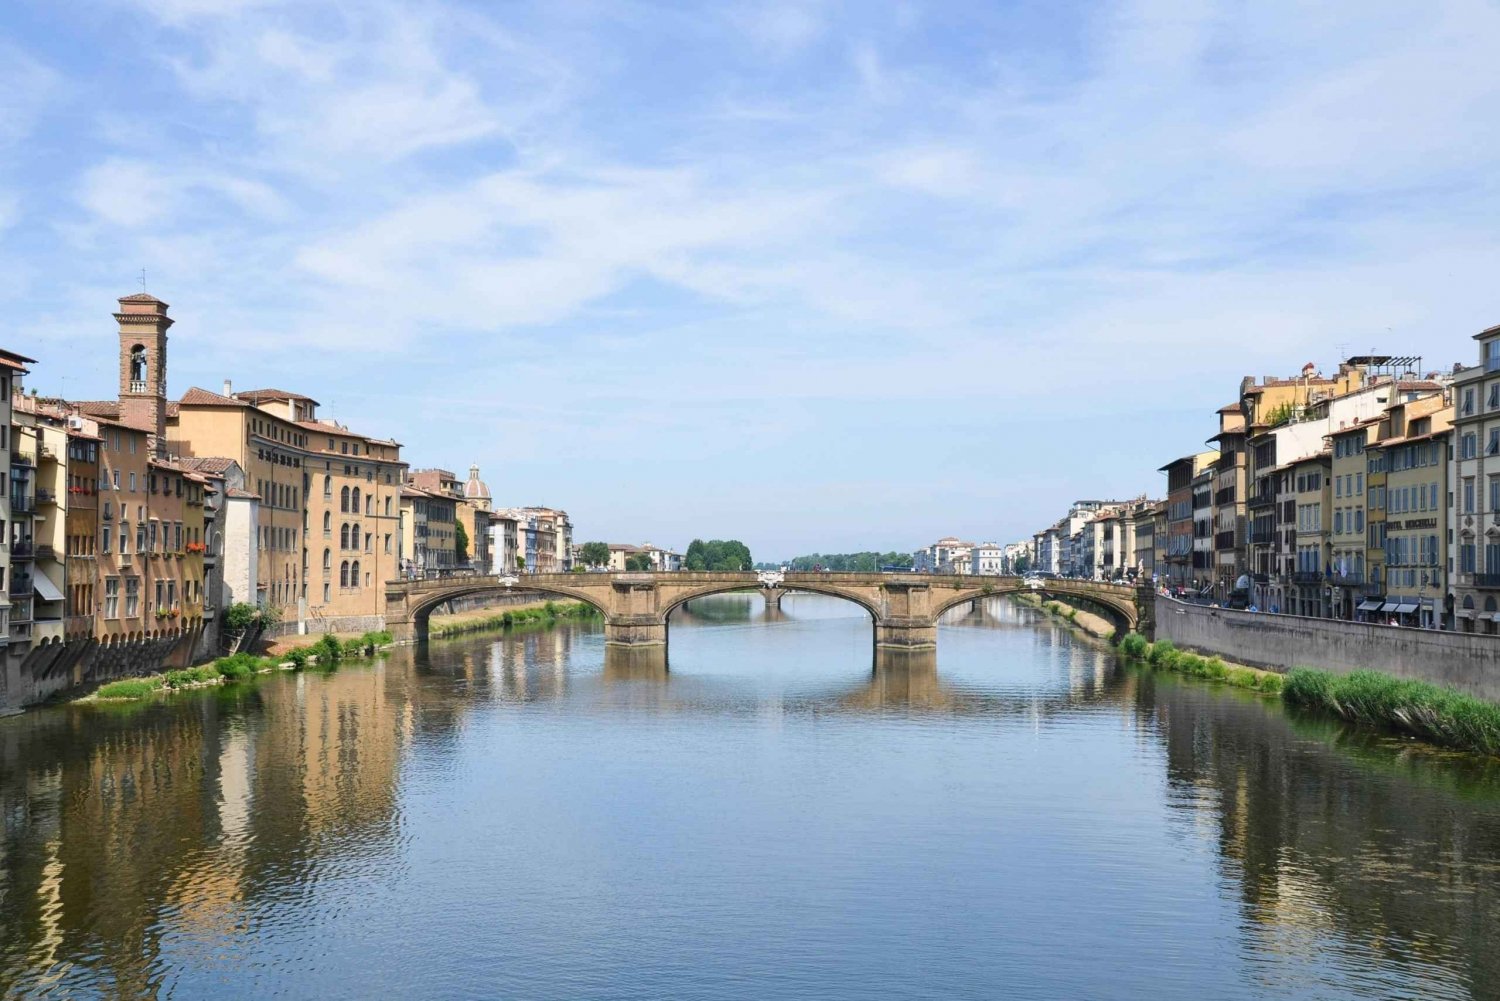 Florens katedral och flodkryssning Arno: En resa genom Arno